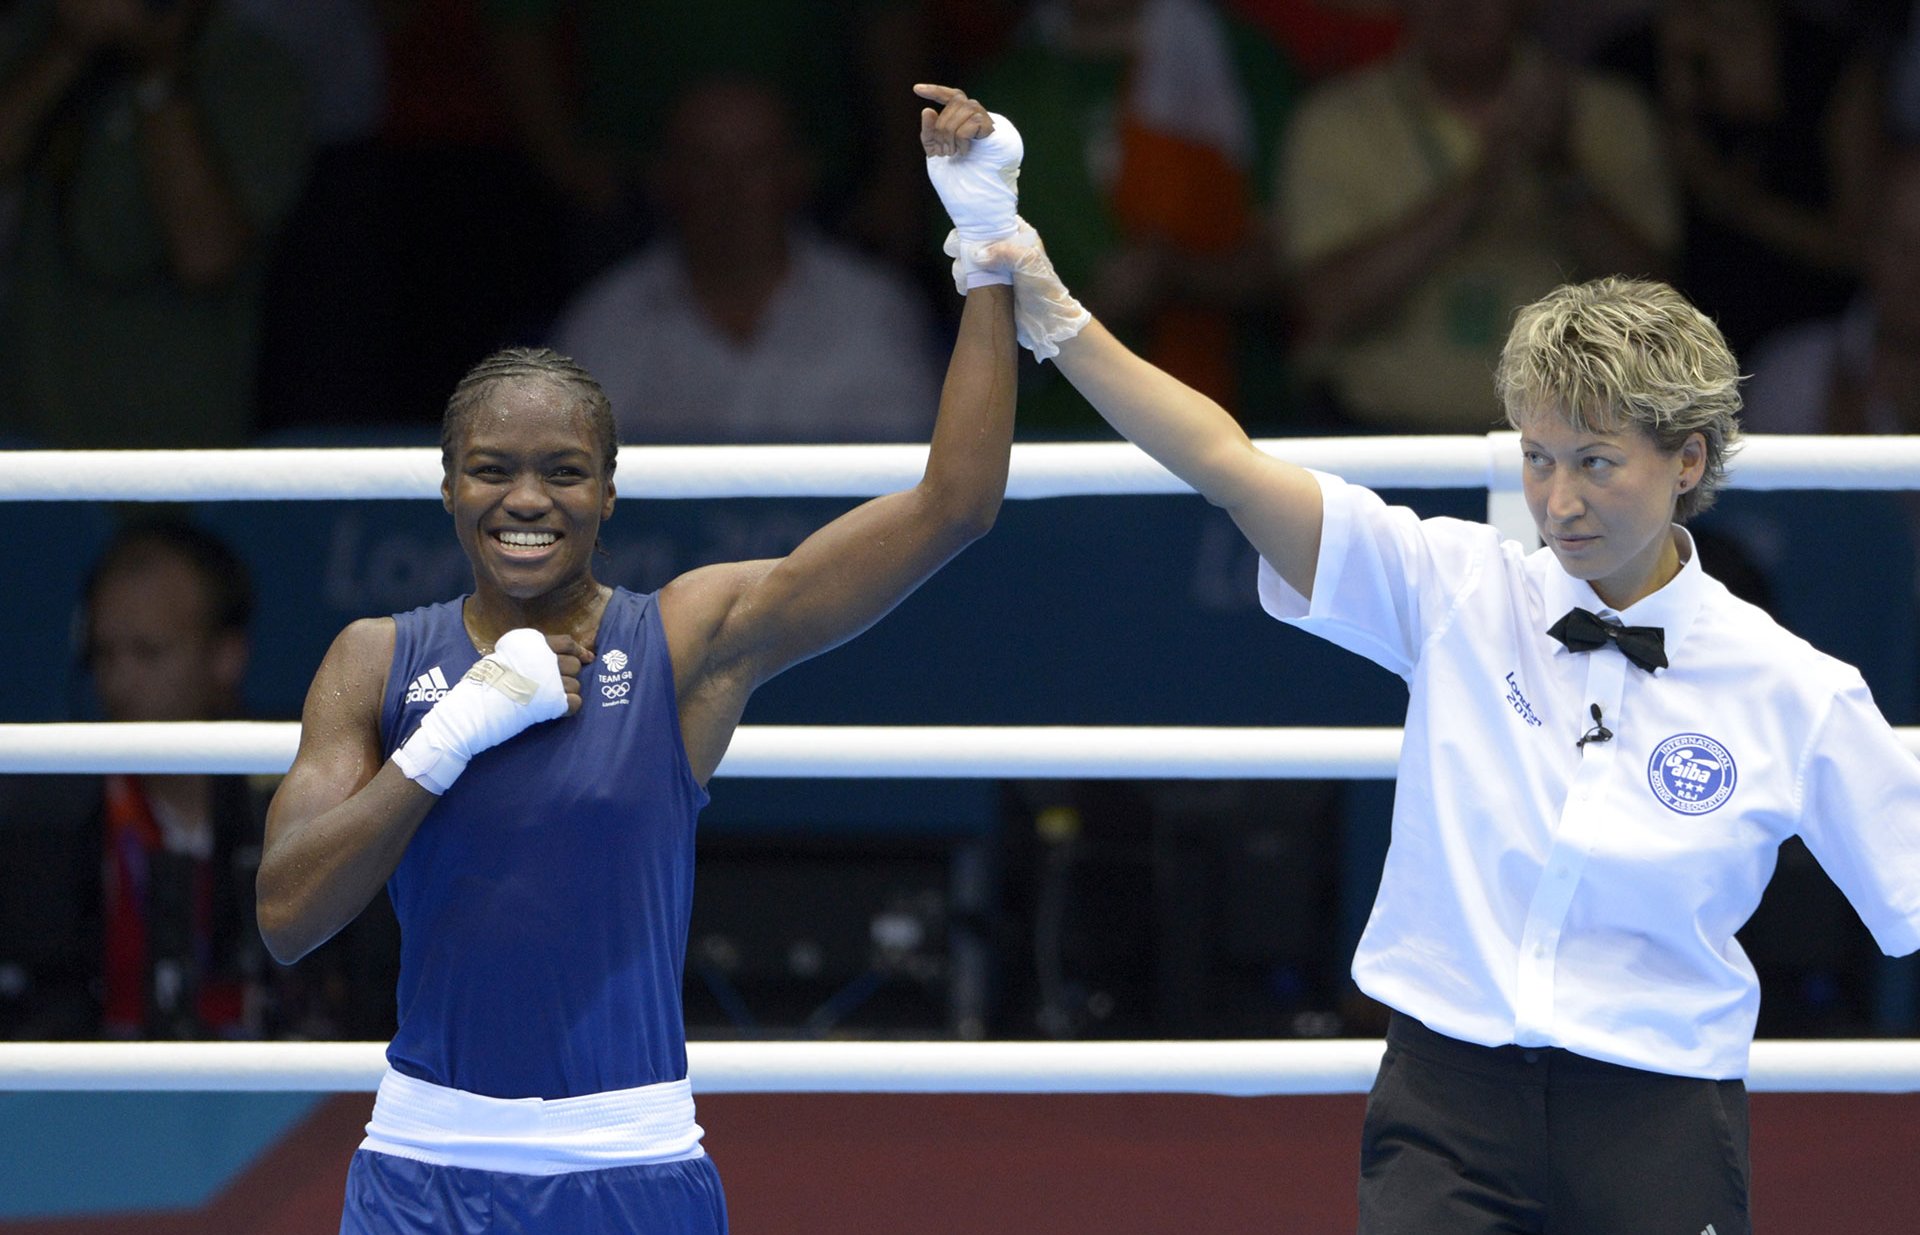 Photos Victoire de Nicola Adams [Grande-Bretagne], médaille d'or lors de la finale de boxe féminine en catégorie poids mouche, photographie, 2012.
